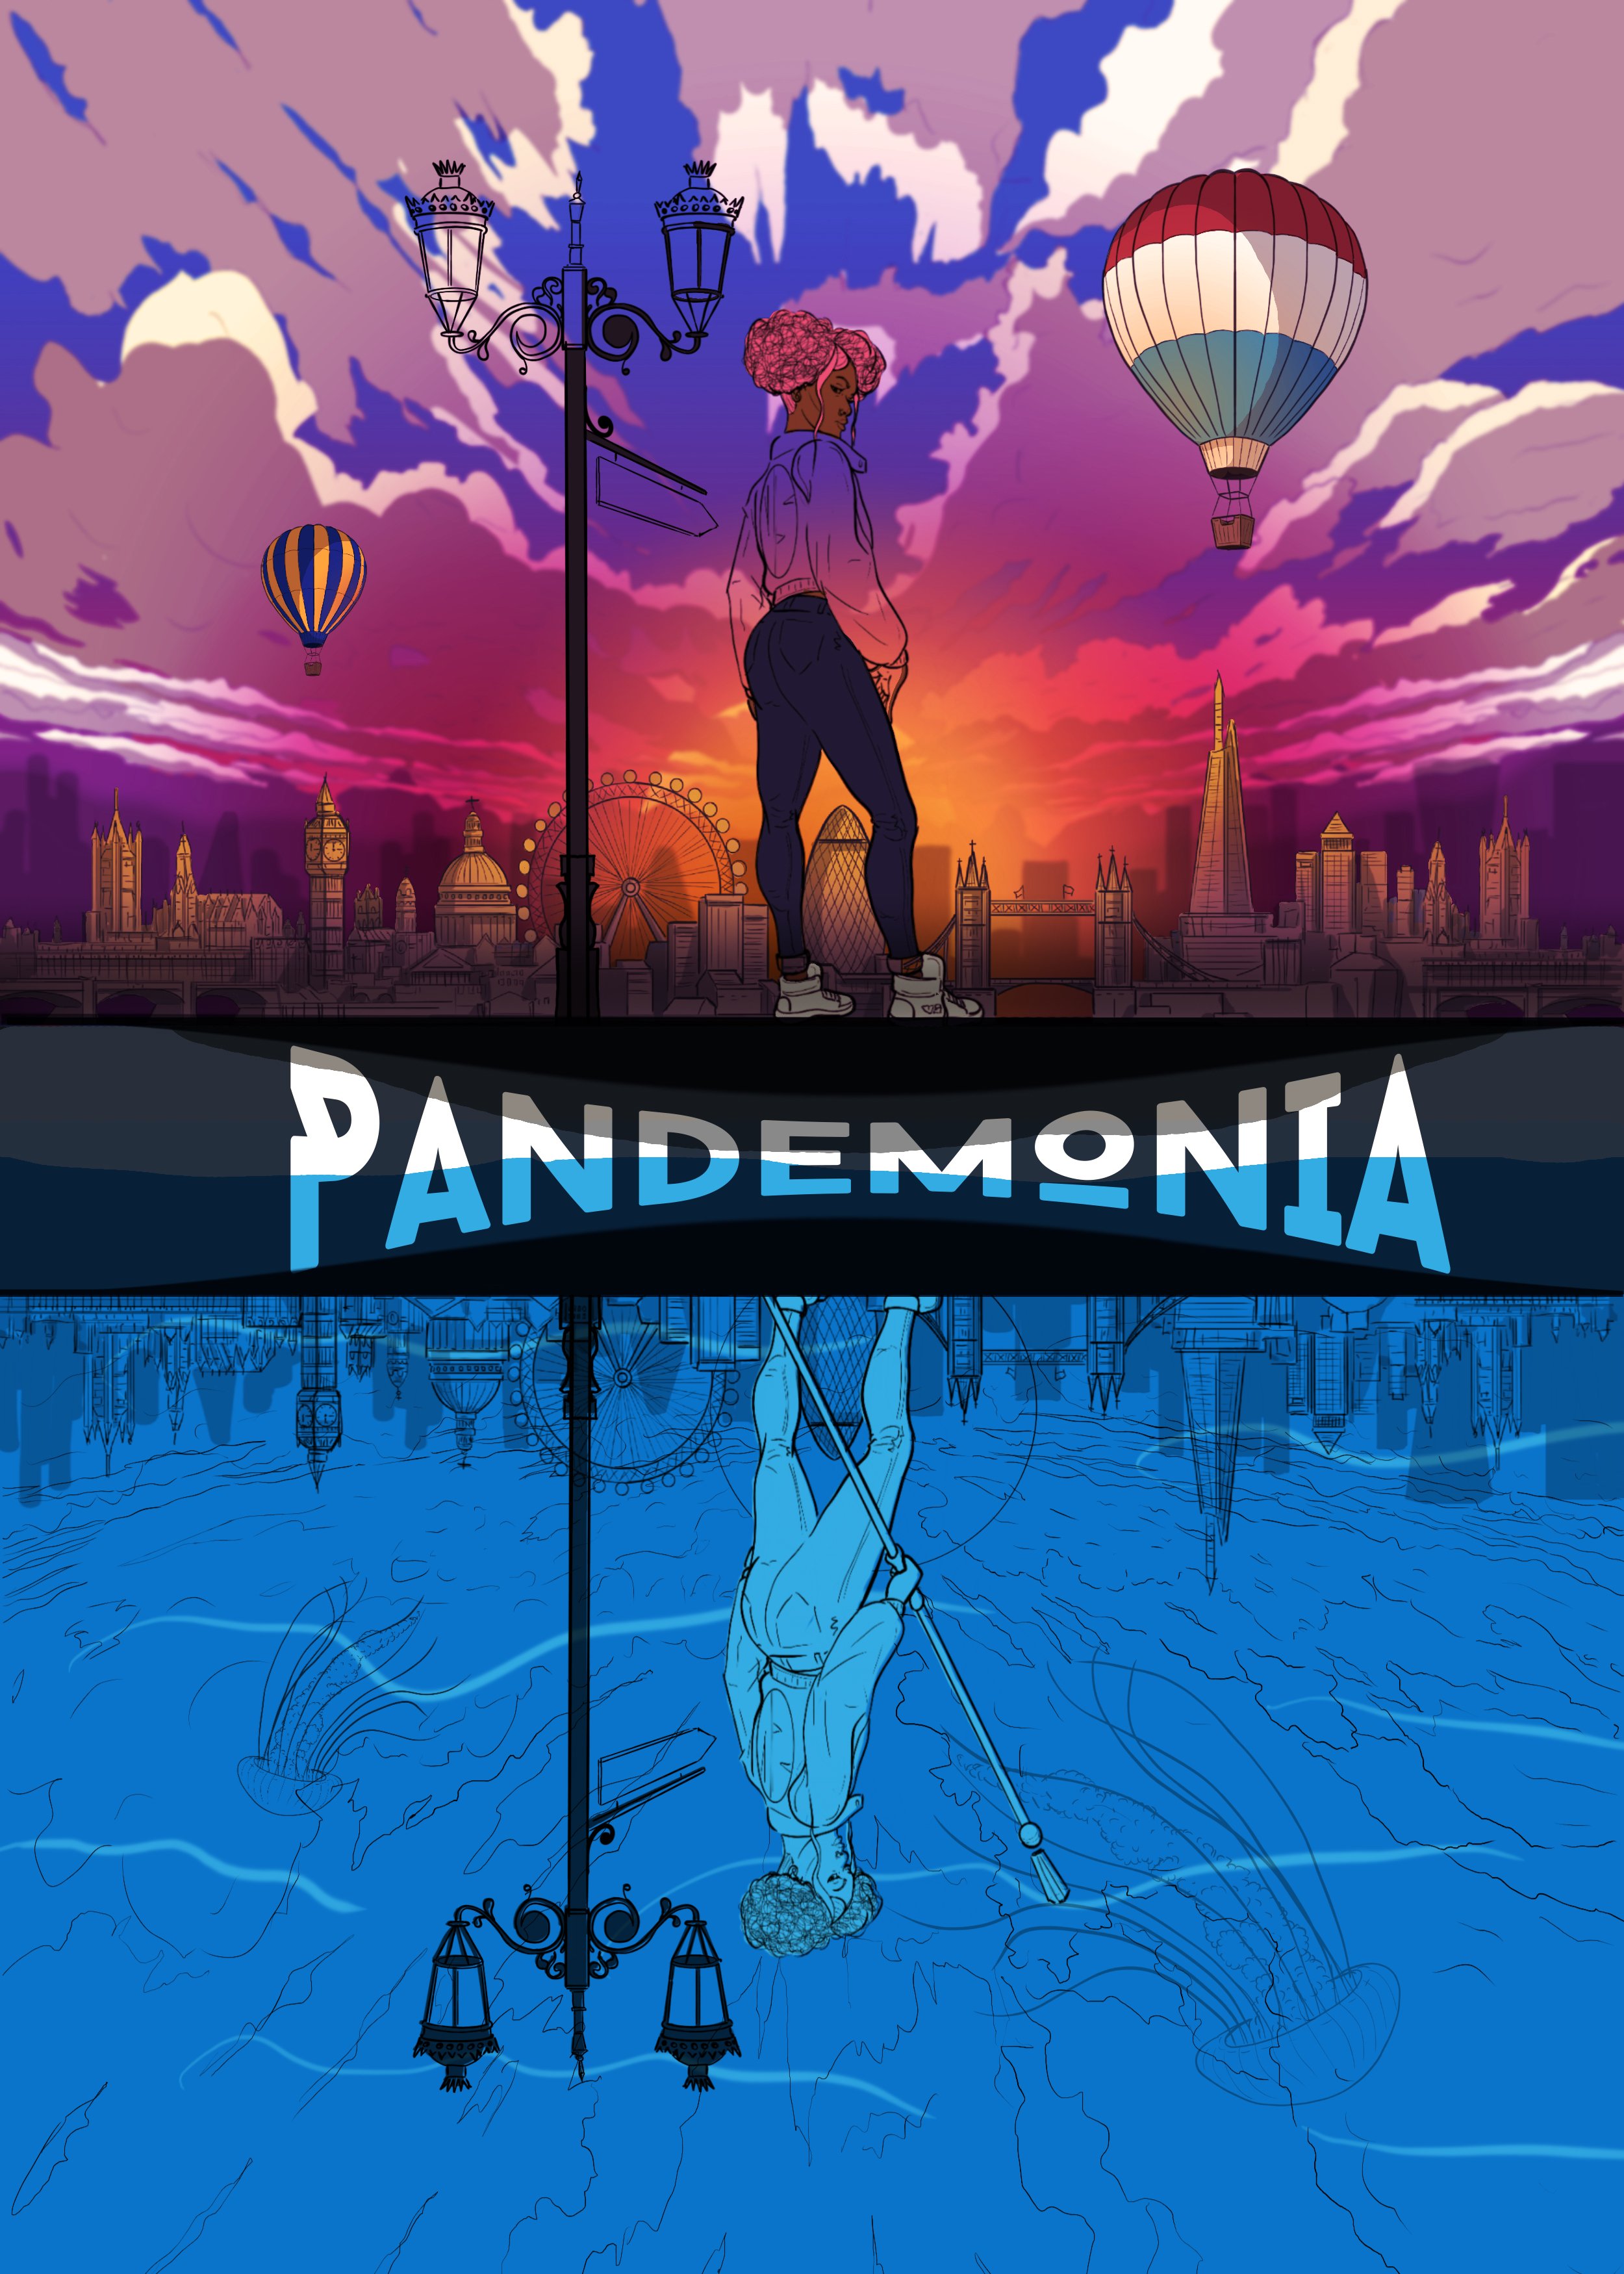 Pandemonia Cover n Title ALT WIP test copy2.jpg